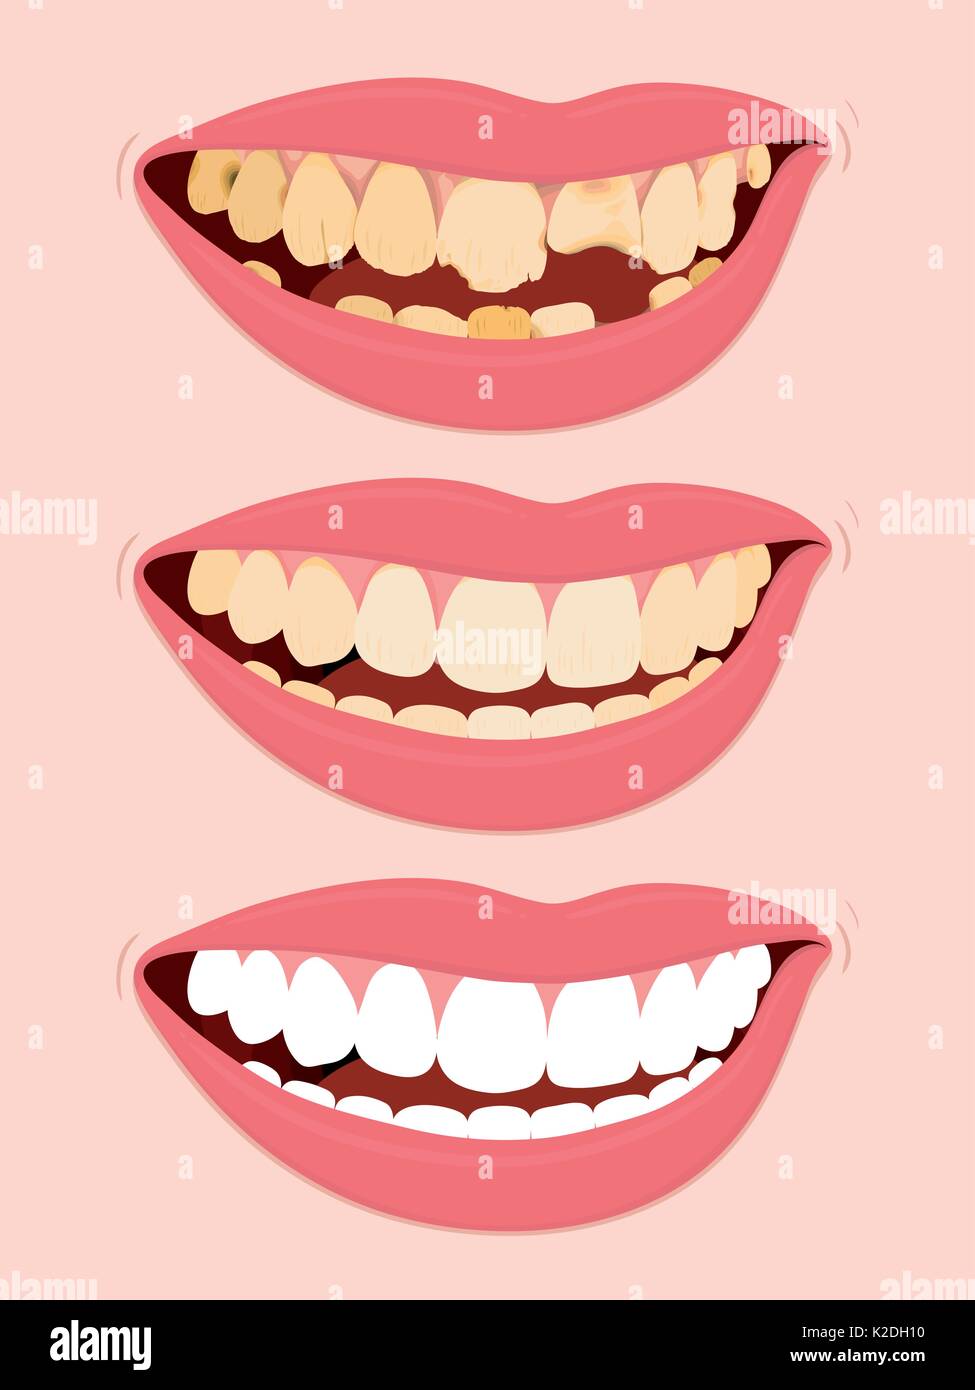 Étapes de la décomposition dentaire, illustration d'ouvrir la bouche féminine montrant trois étapes pour dents pourries Illustration de Vecteur